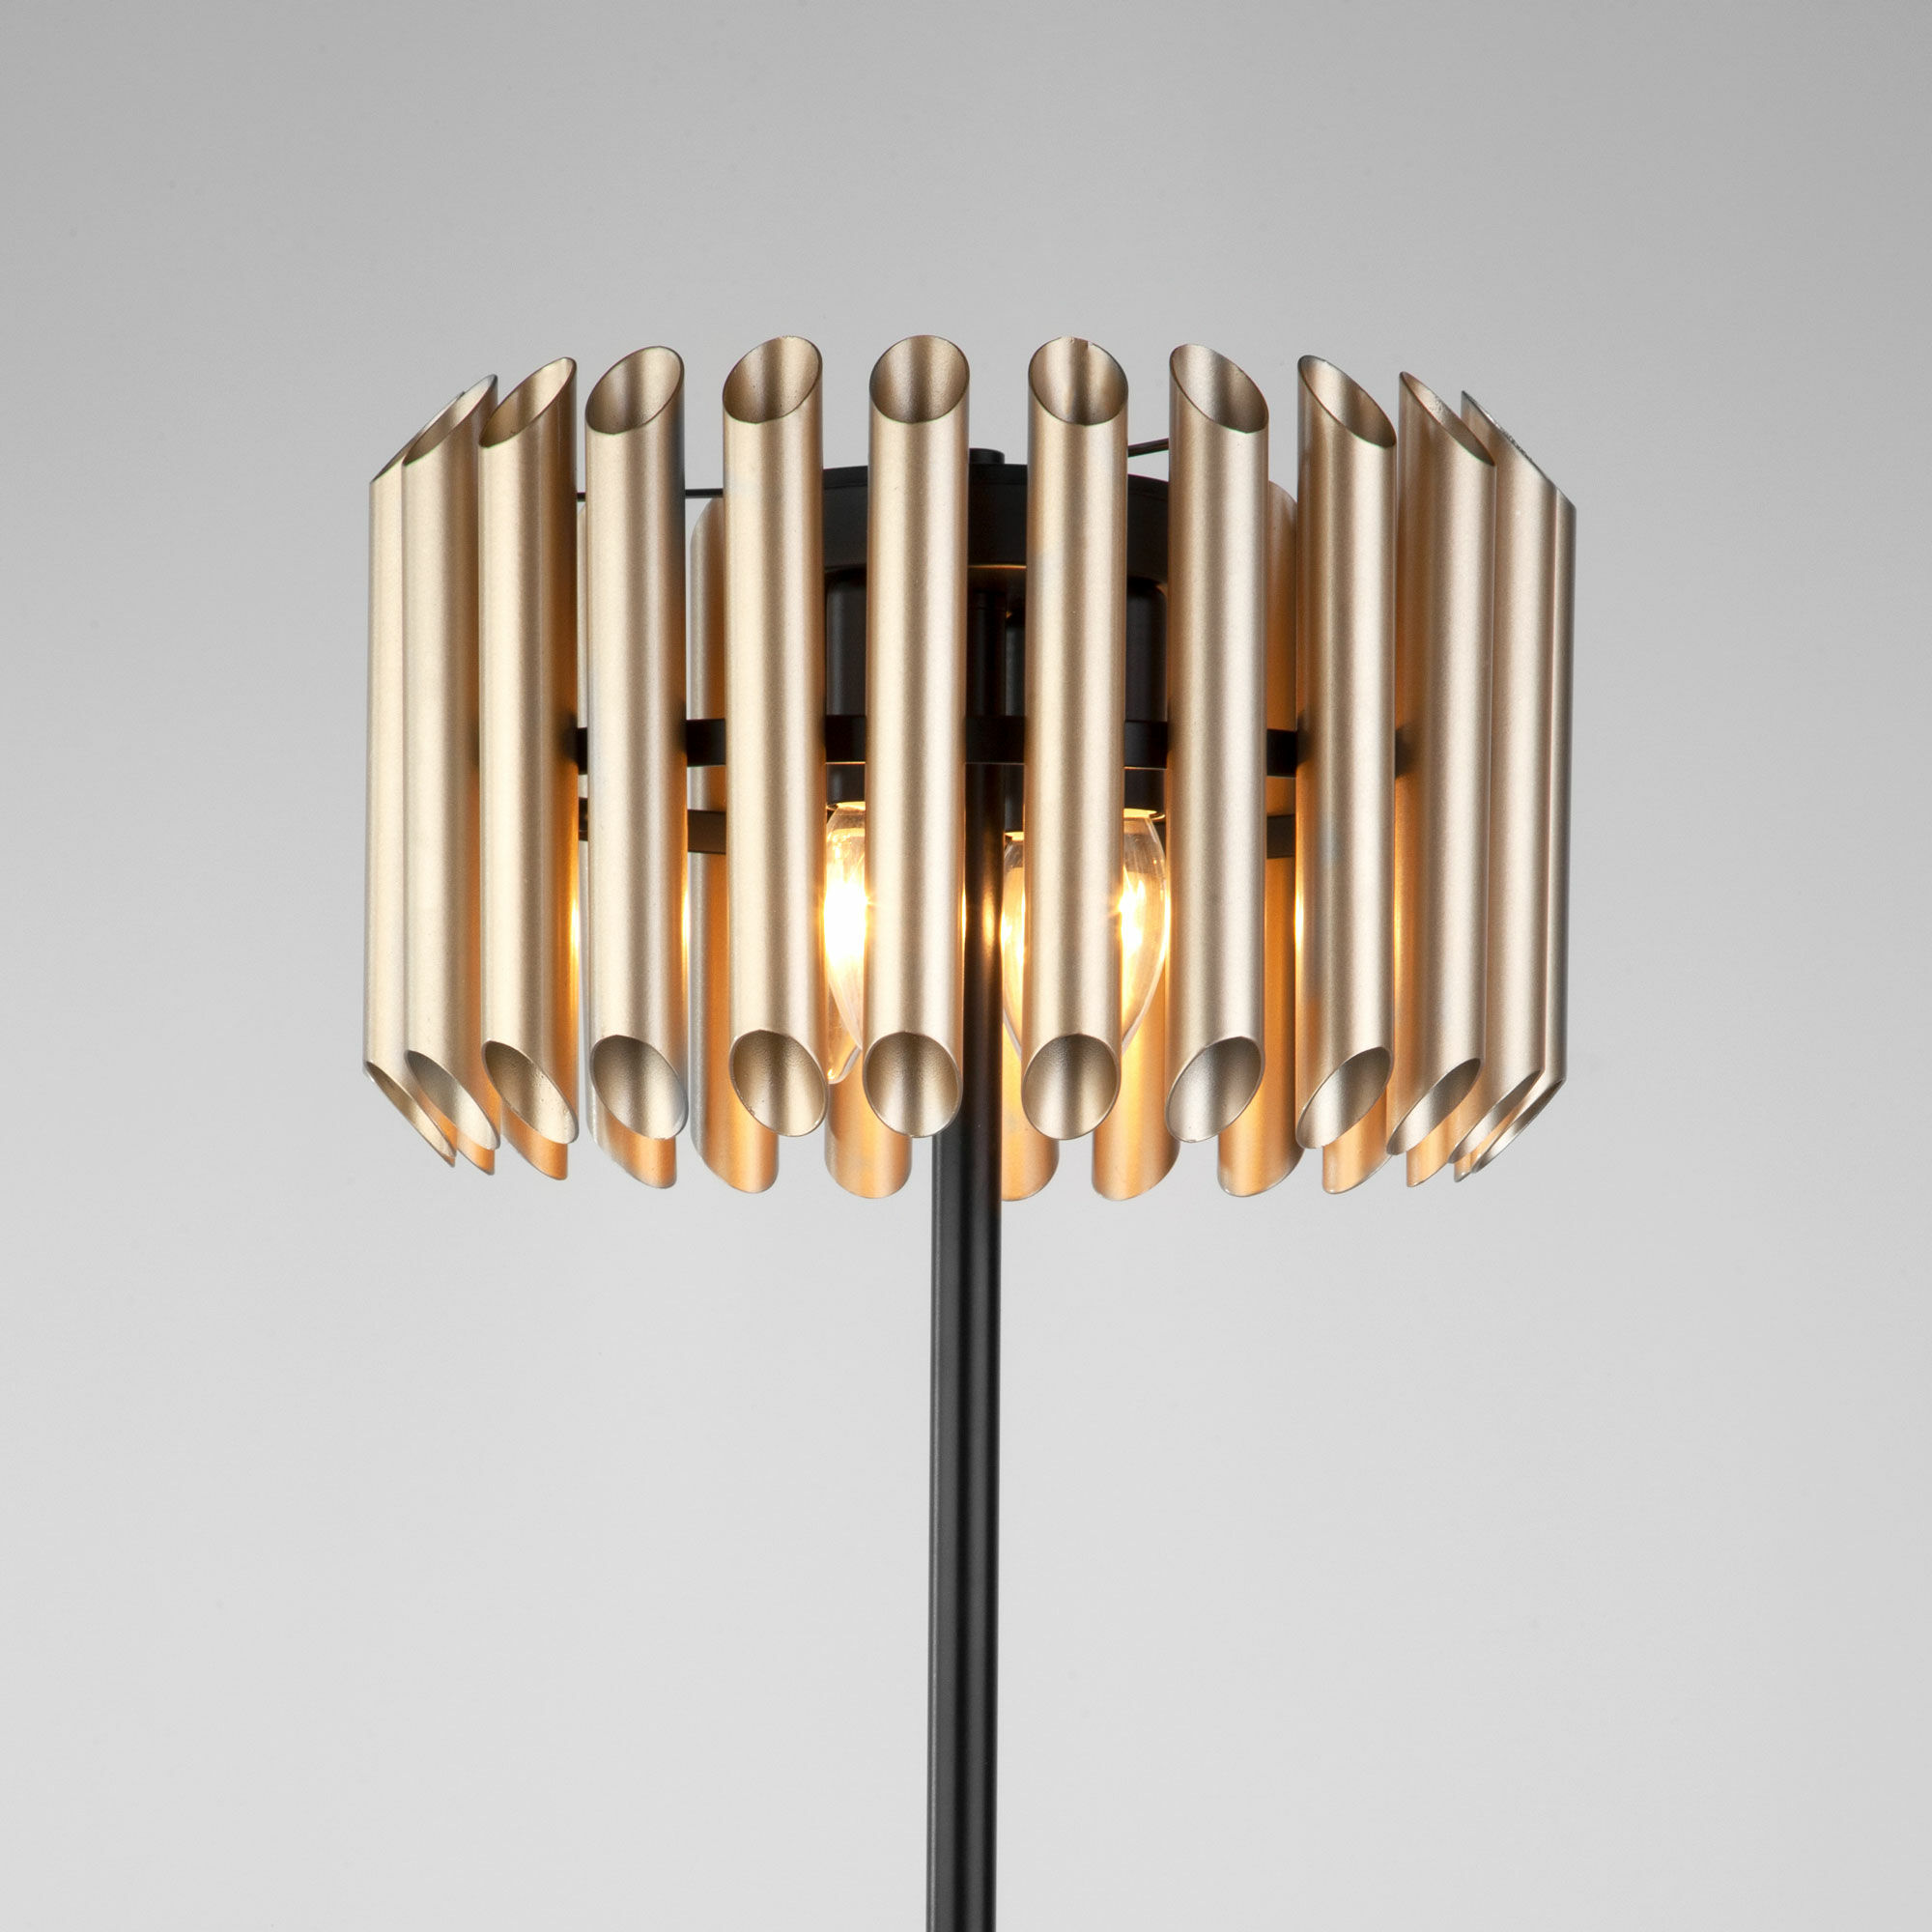 Напольный светильник с металлическим плафоном Bogate's Castellie 01106/4 черный / шампань. Фото 3